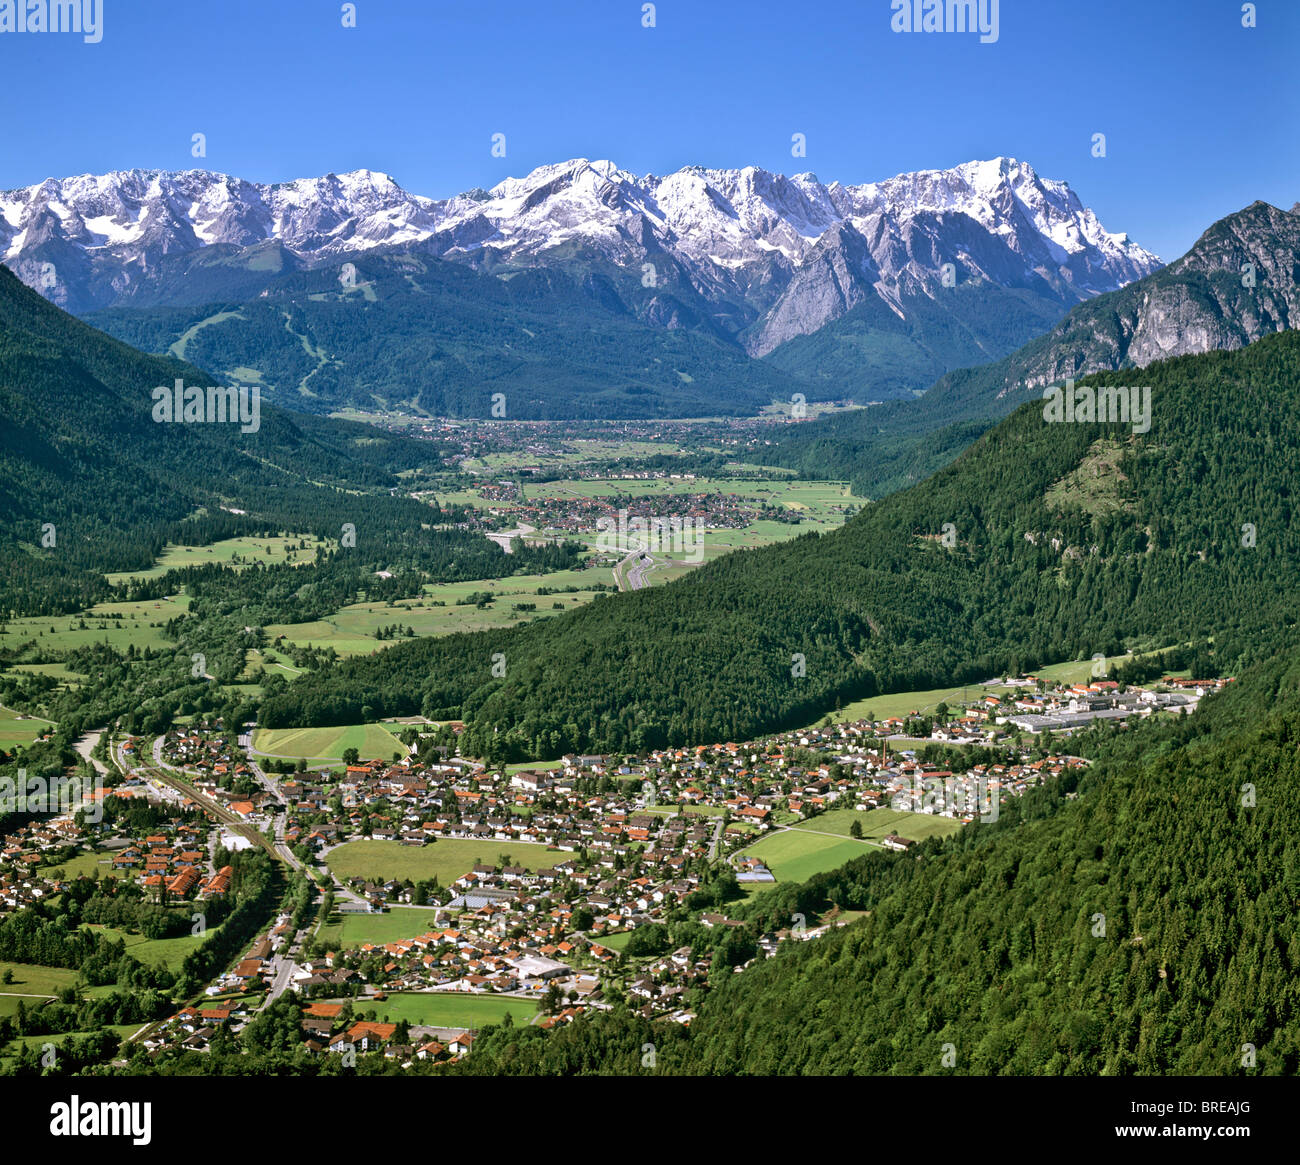 Aerial picture, Loisach, Loisachtal Valley, Werdenfelser Land, Werdenfels, Wetterstein Range, Upper Bavaria, Germany, Europe Stock Photo